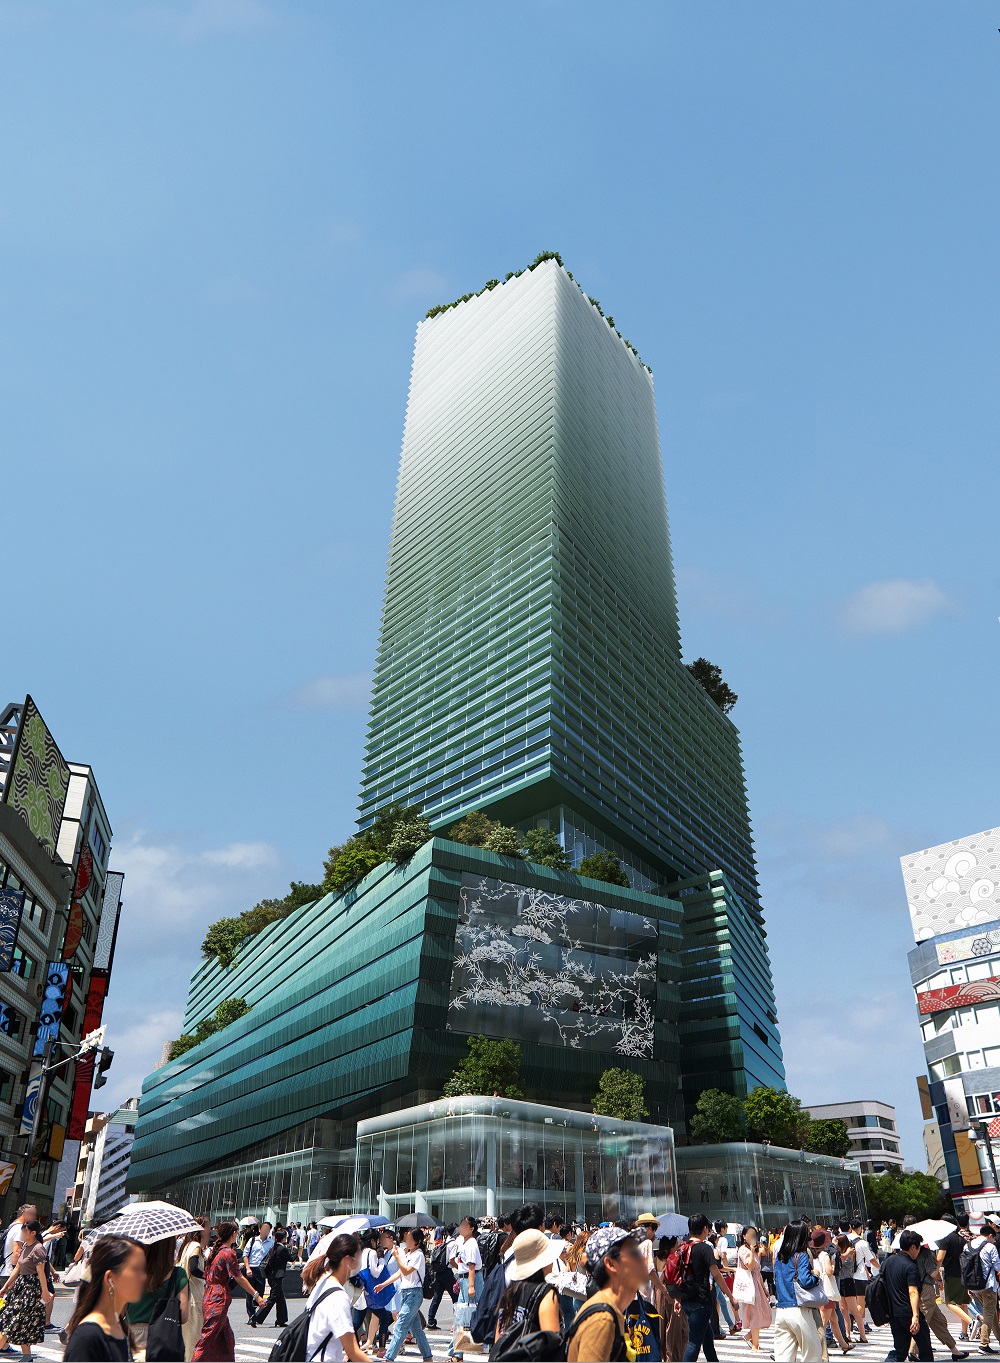 東急百貨店本店の跡地に27年度に完成する予定の複合施設「Shibuya Upper West Project（渋谷アッパー・ウエスト・プロジェクト）」（出所：東急、Image by Mir／Snøhetta）